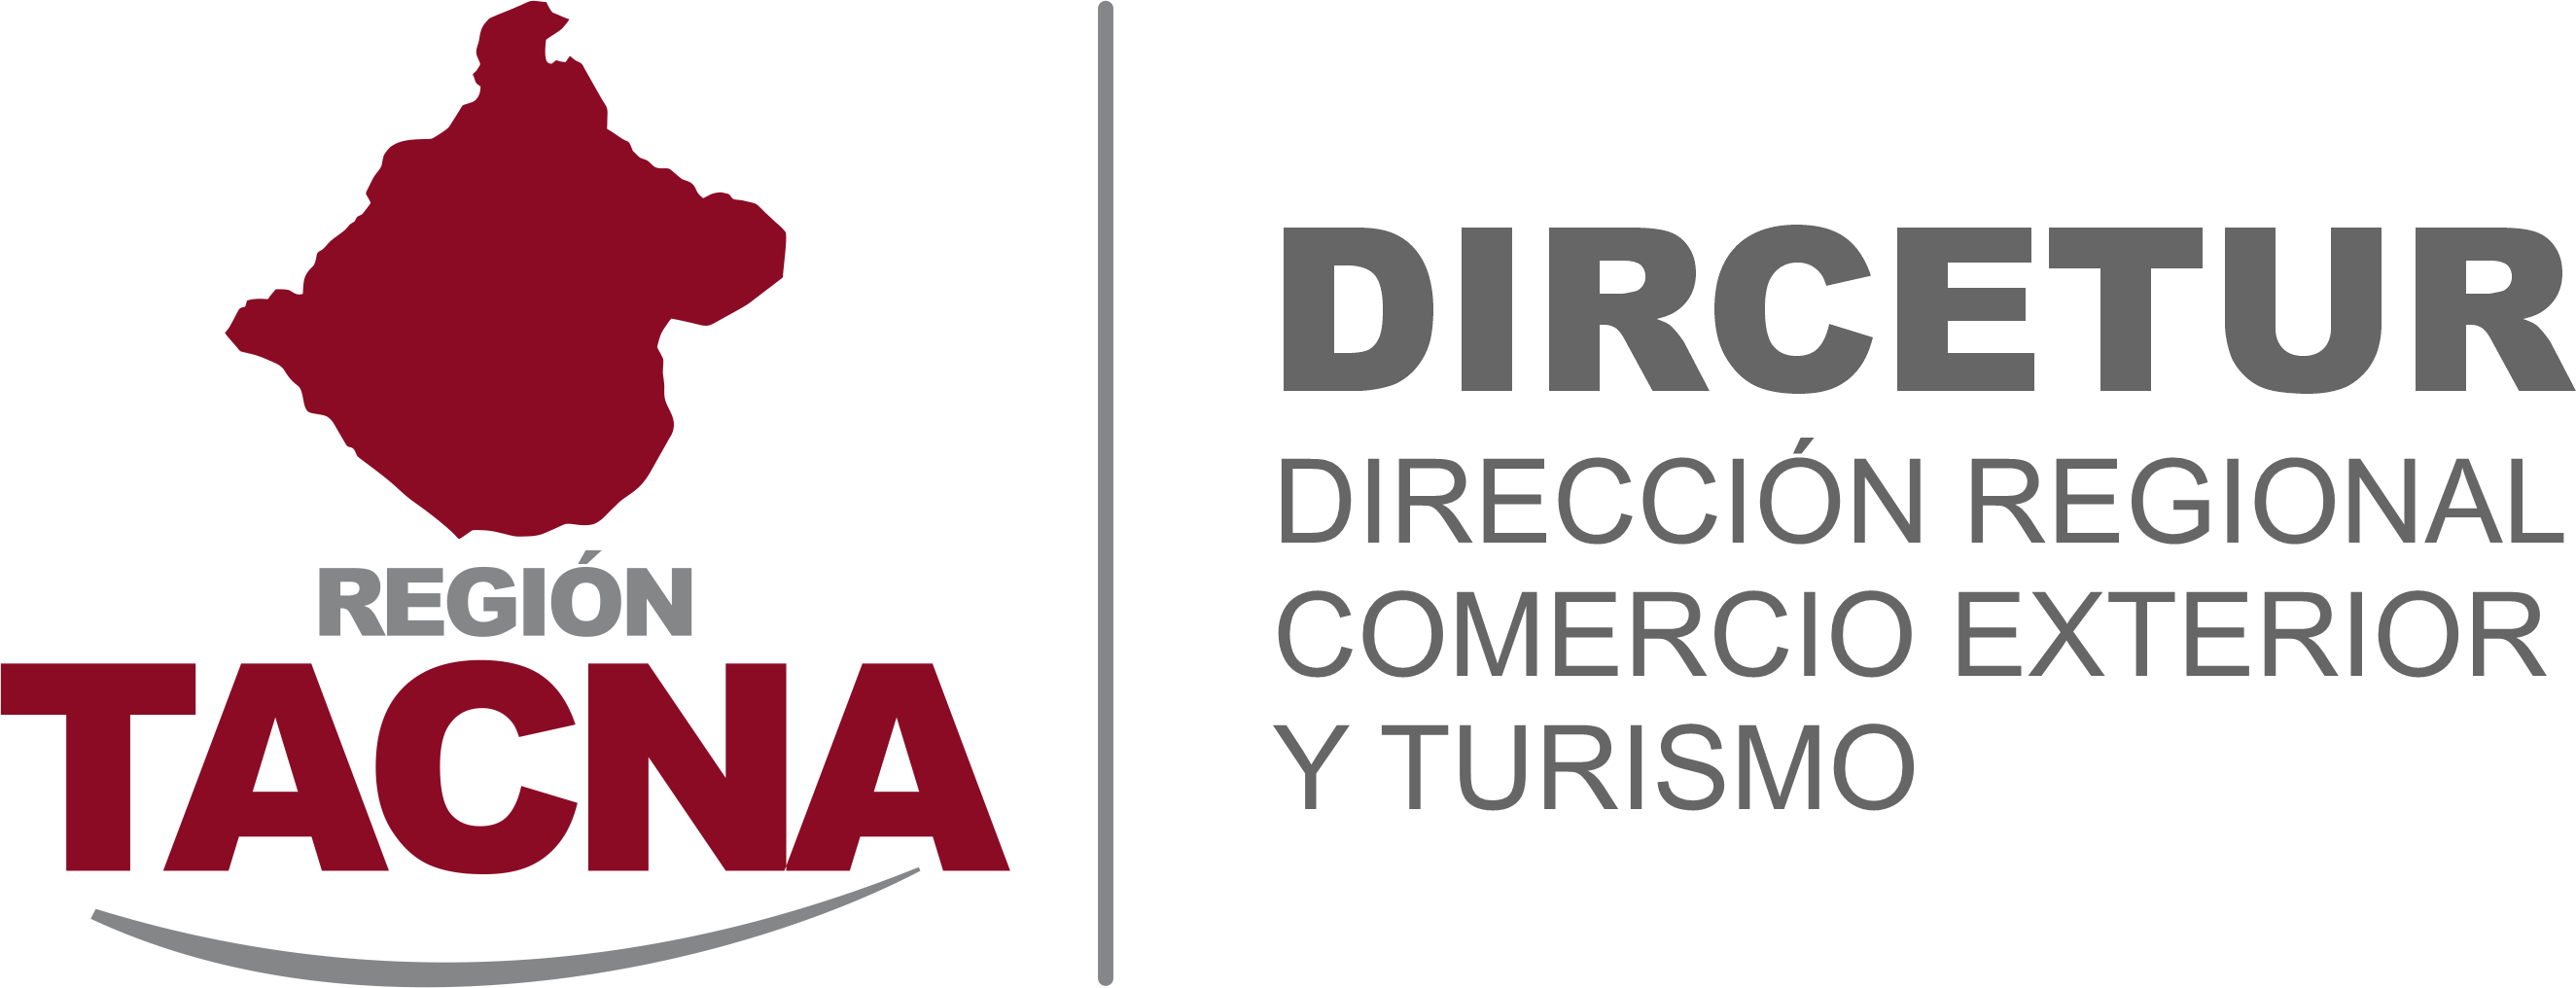 DIRECTORA  REGIONAL DE COMERCIO EXTERIOR Y TURISMO DE TACNA